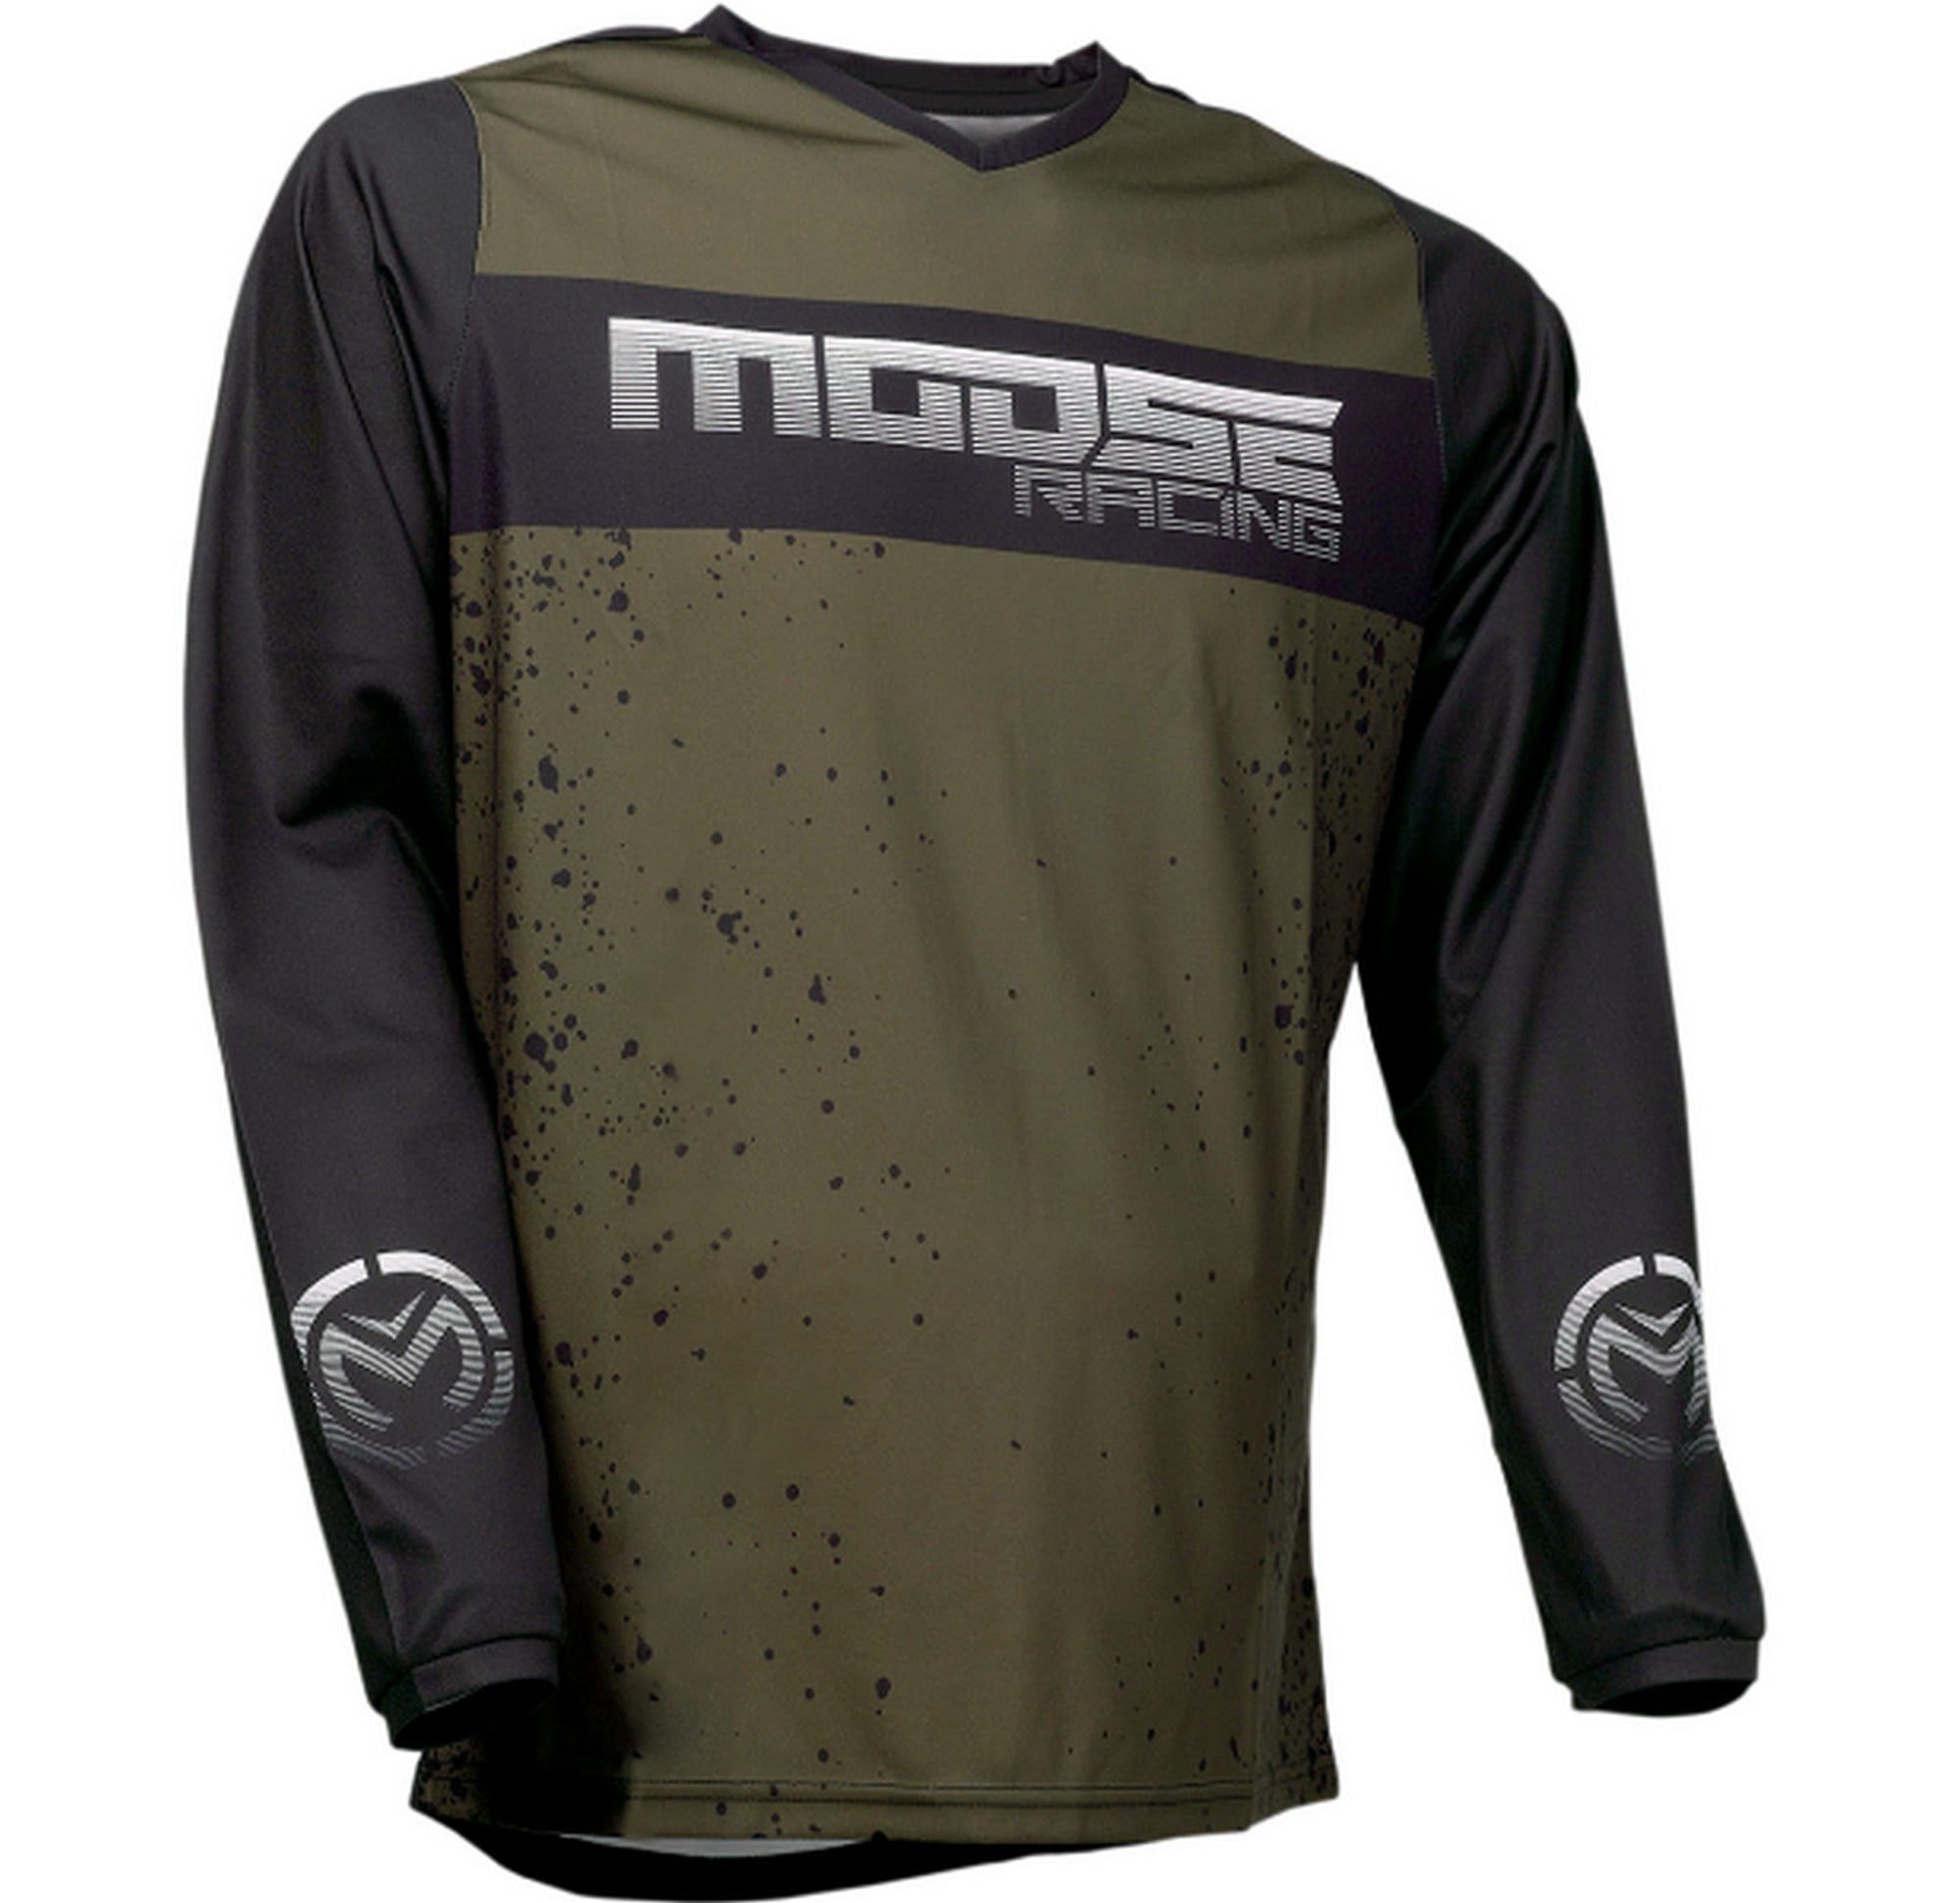 Next Sports Men's Jersey/ Shirt MX Motocross Dirt Bike Off Road ATV Made in USA! 